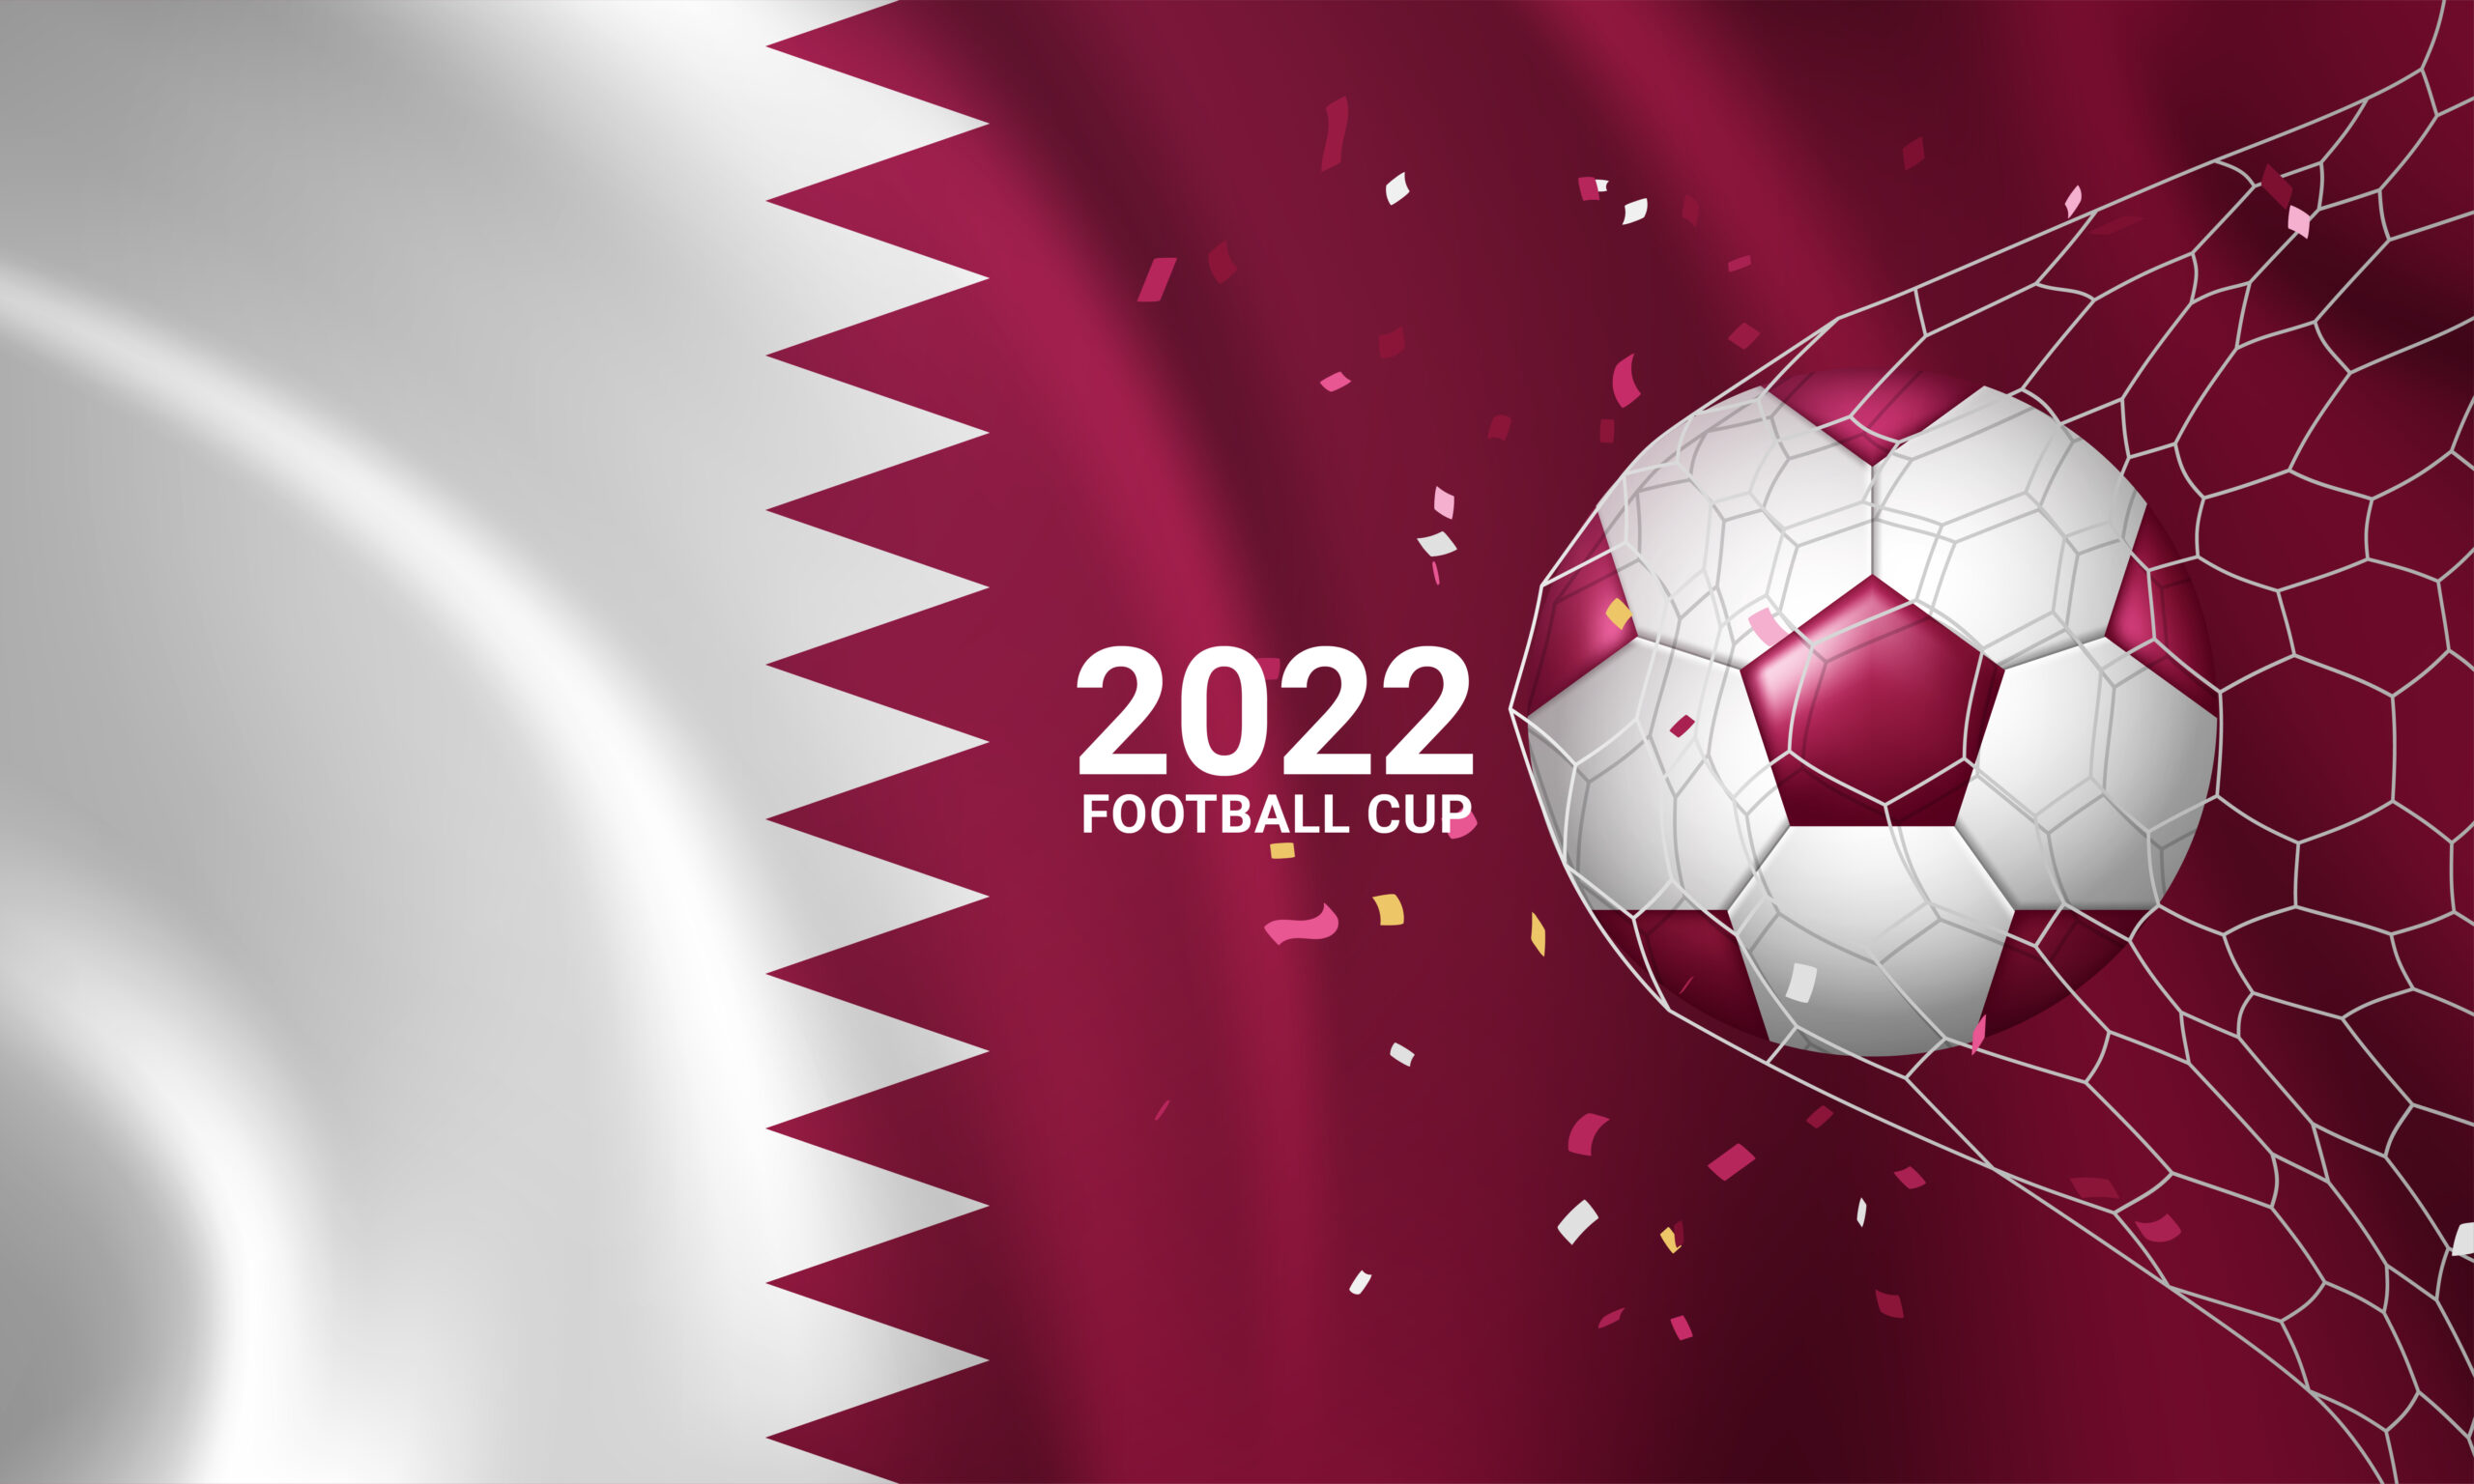 3d-bandera-futbol-copa-mundial-qatar. Imagen de almumtazza en Freepik